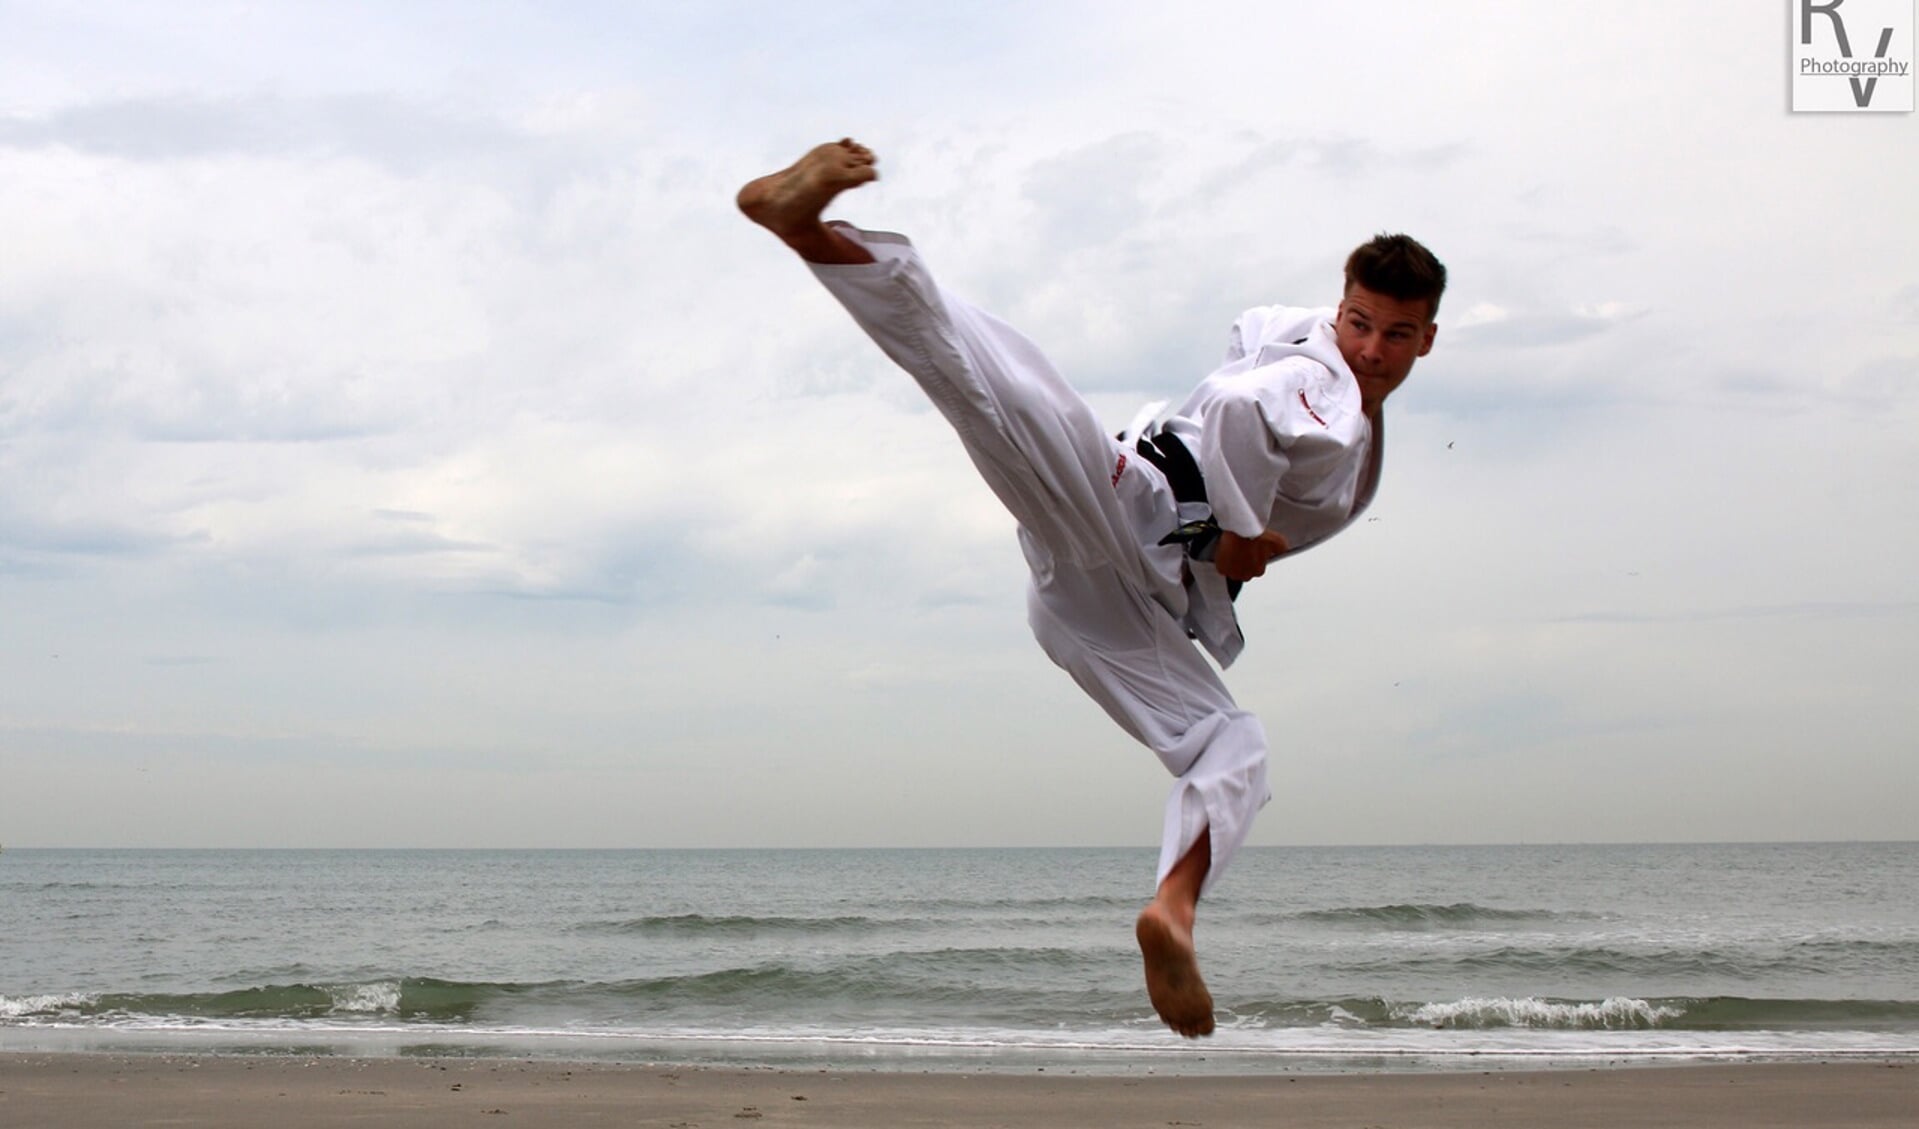 Mitchell Hessing heeft een passie voor taekwondo. Hij hoopt eind april op het EK in Finland een droom te kunnen verwezenlijken. (foto: Rory de Vries)